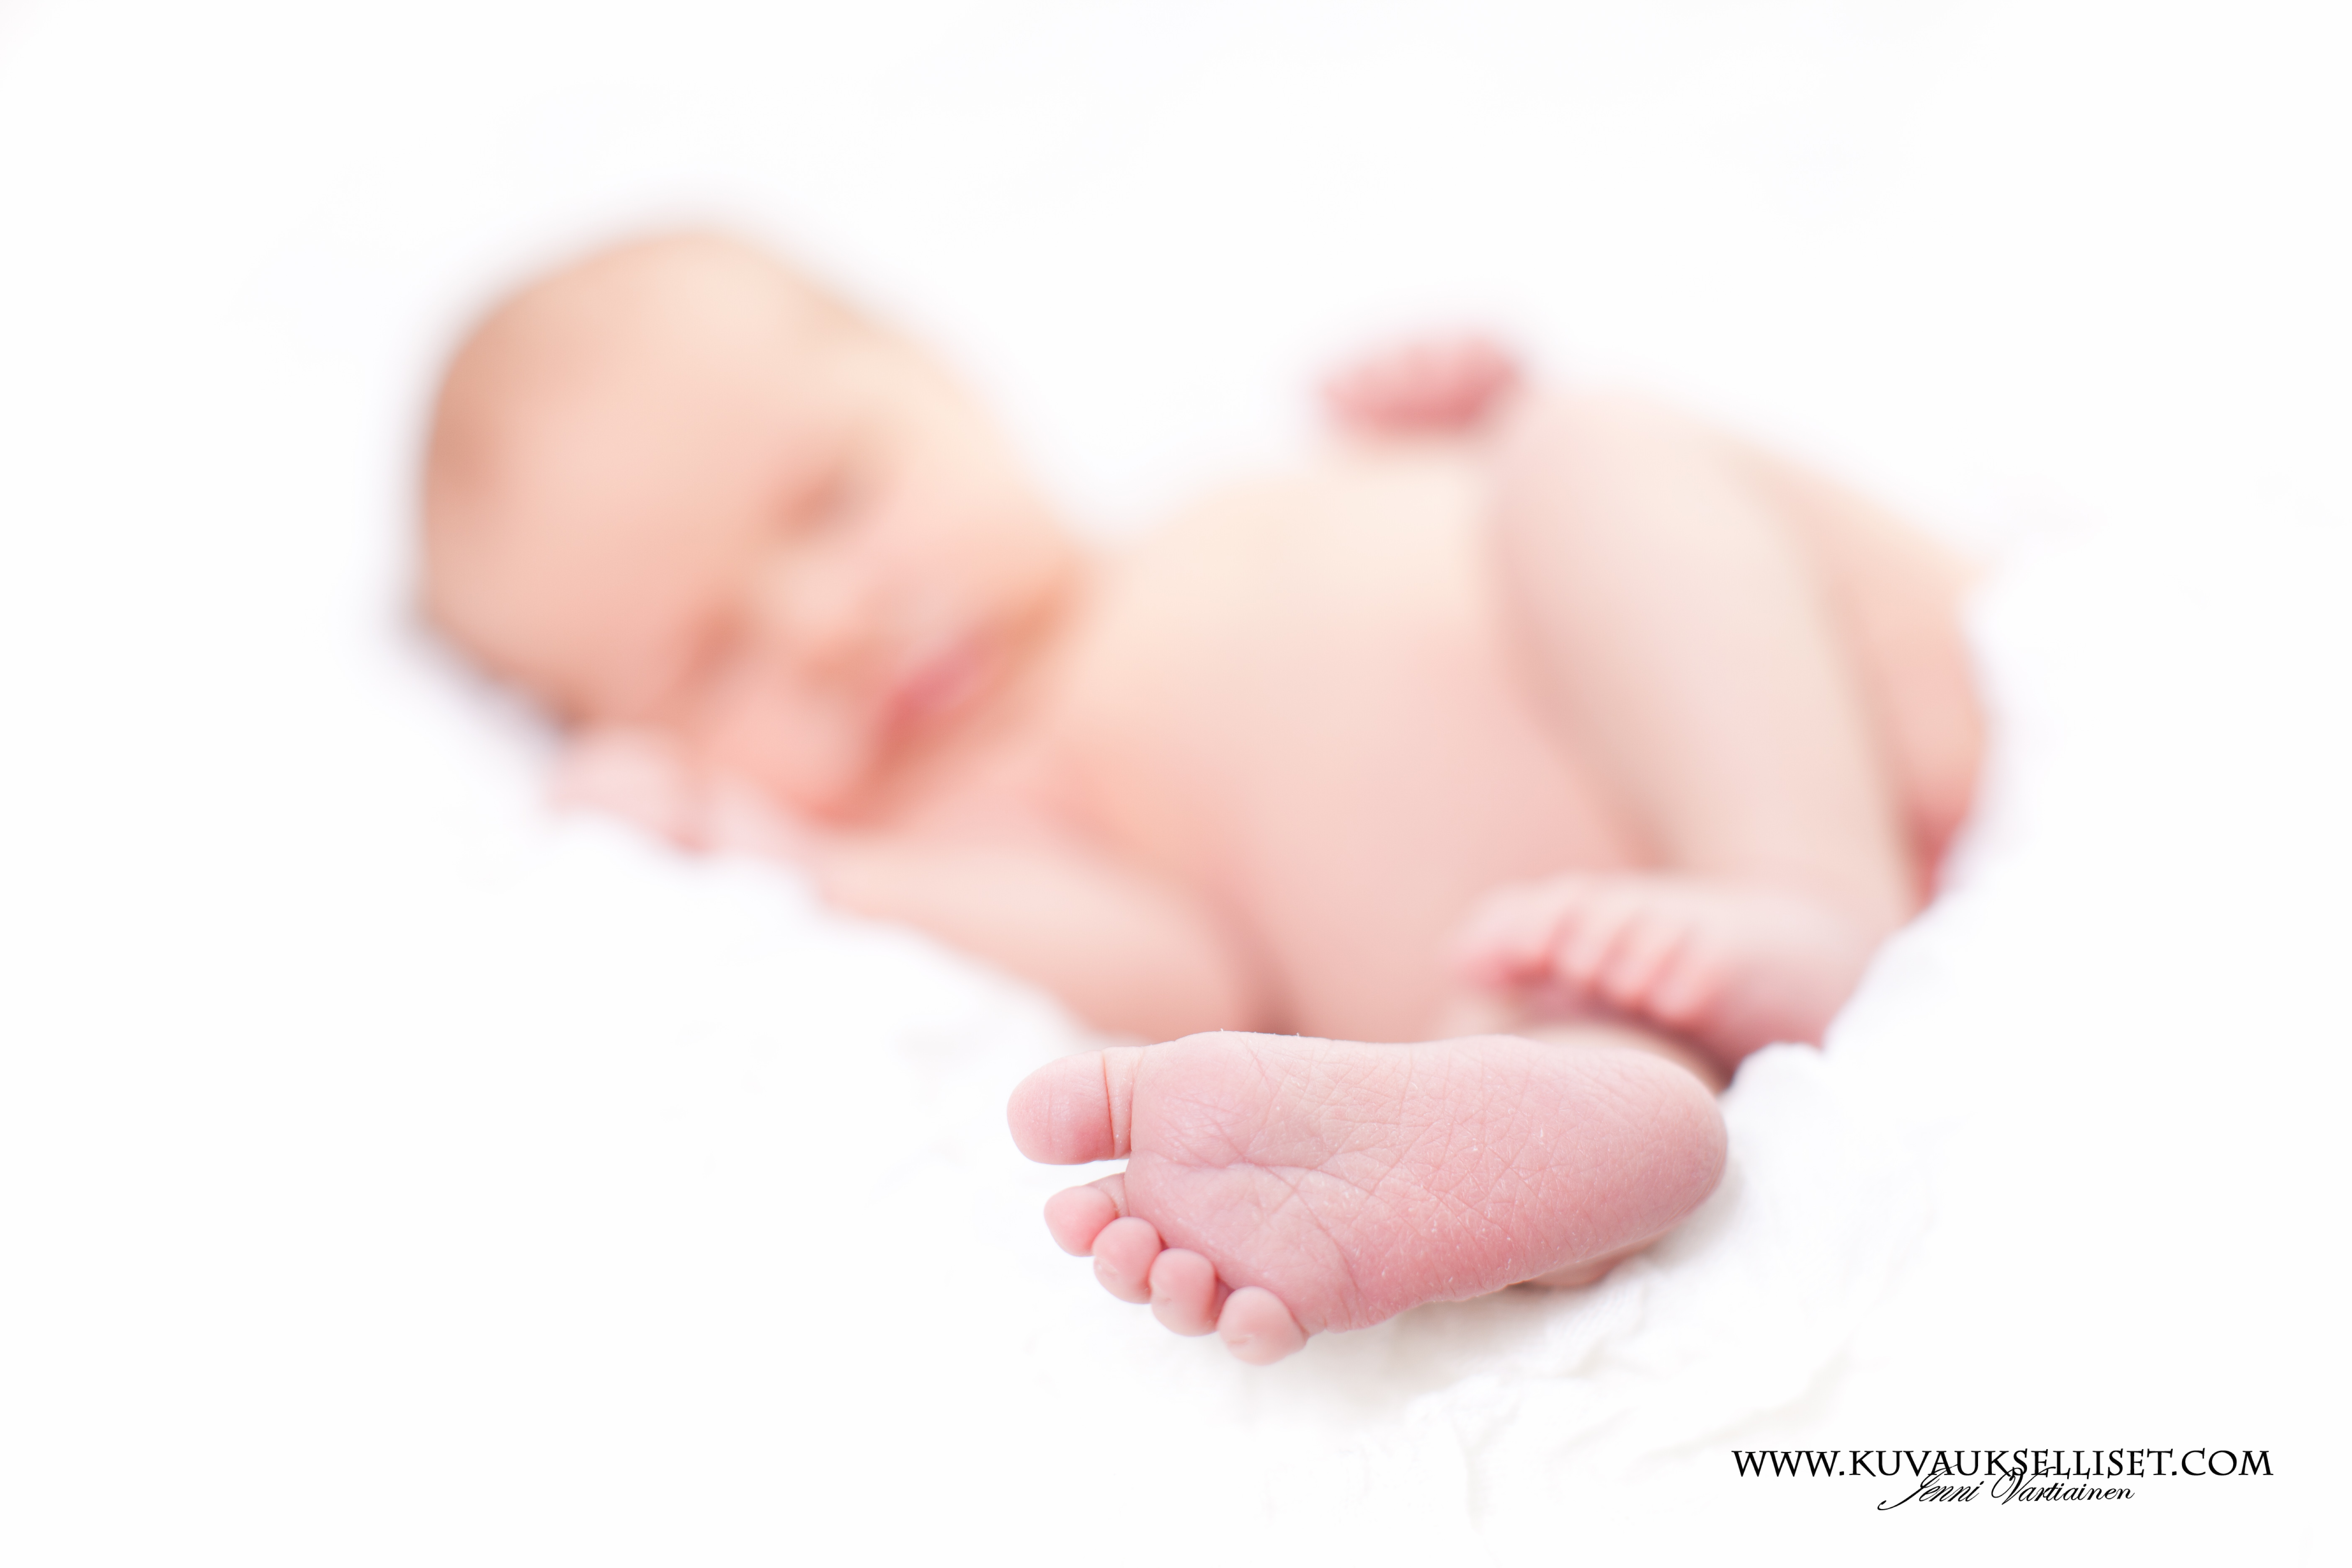 2014.4.8 vauvakuvaus vastasyntyneen kuvaus studiokuvaus